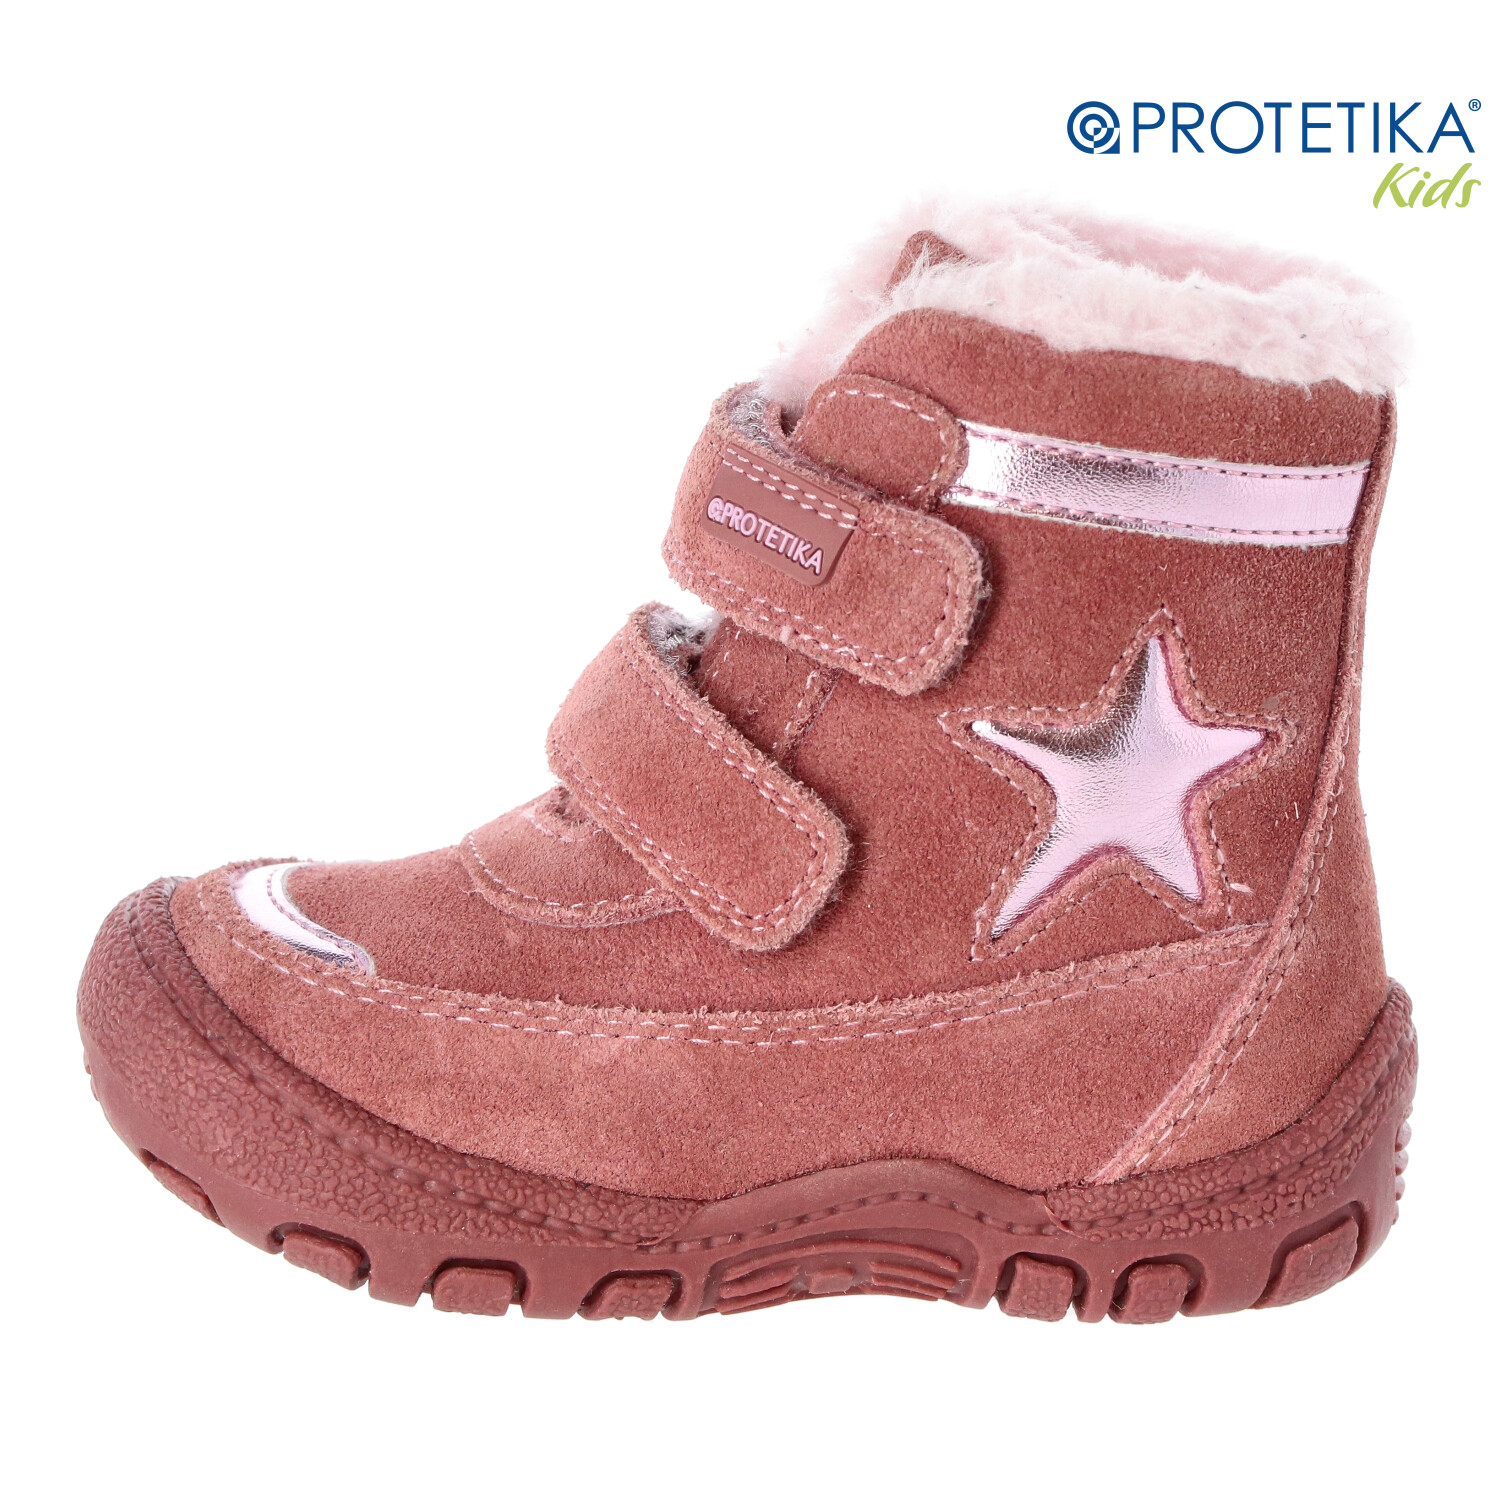 Protetika - zimné topánky s kožušinkou PULA old pink